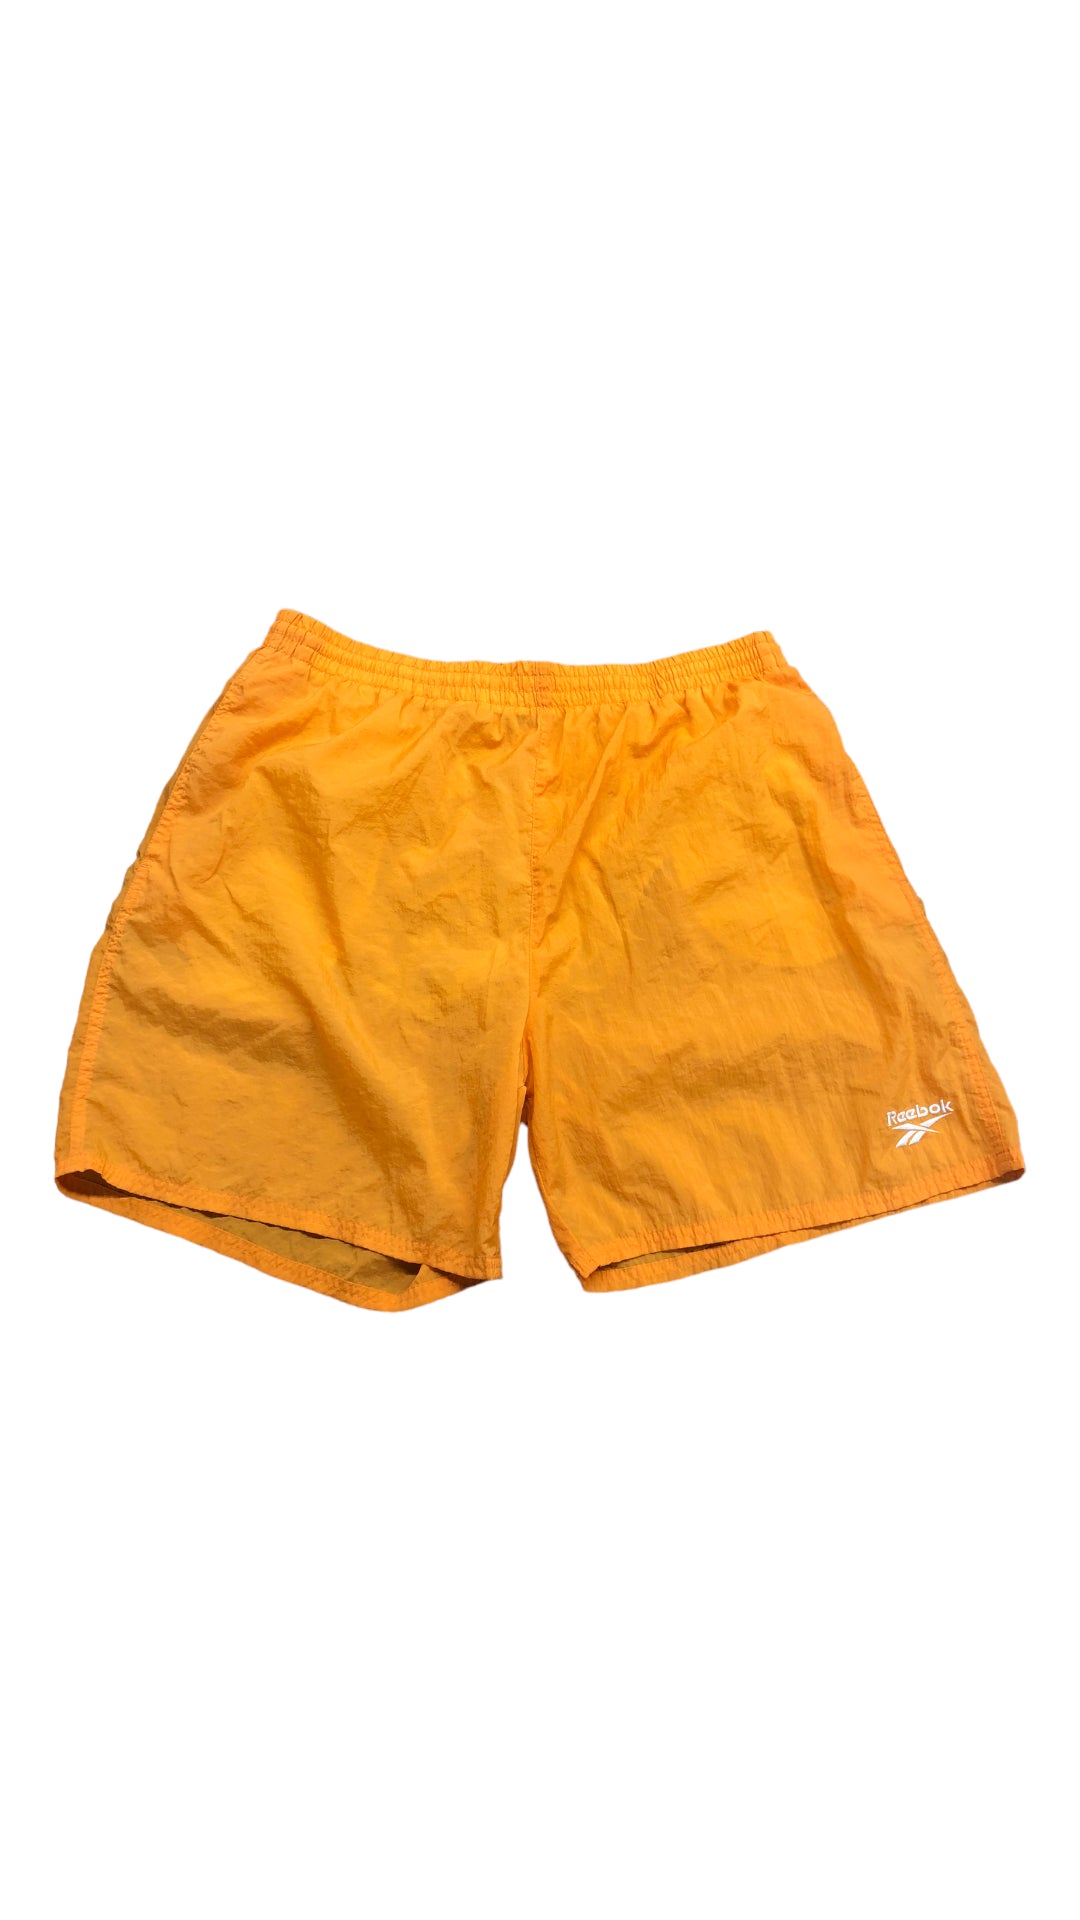 VTG Orange Reebok Nylon Shorts Sz XL